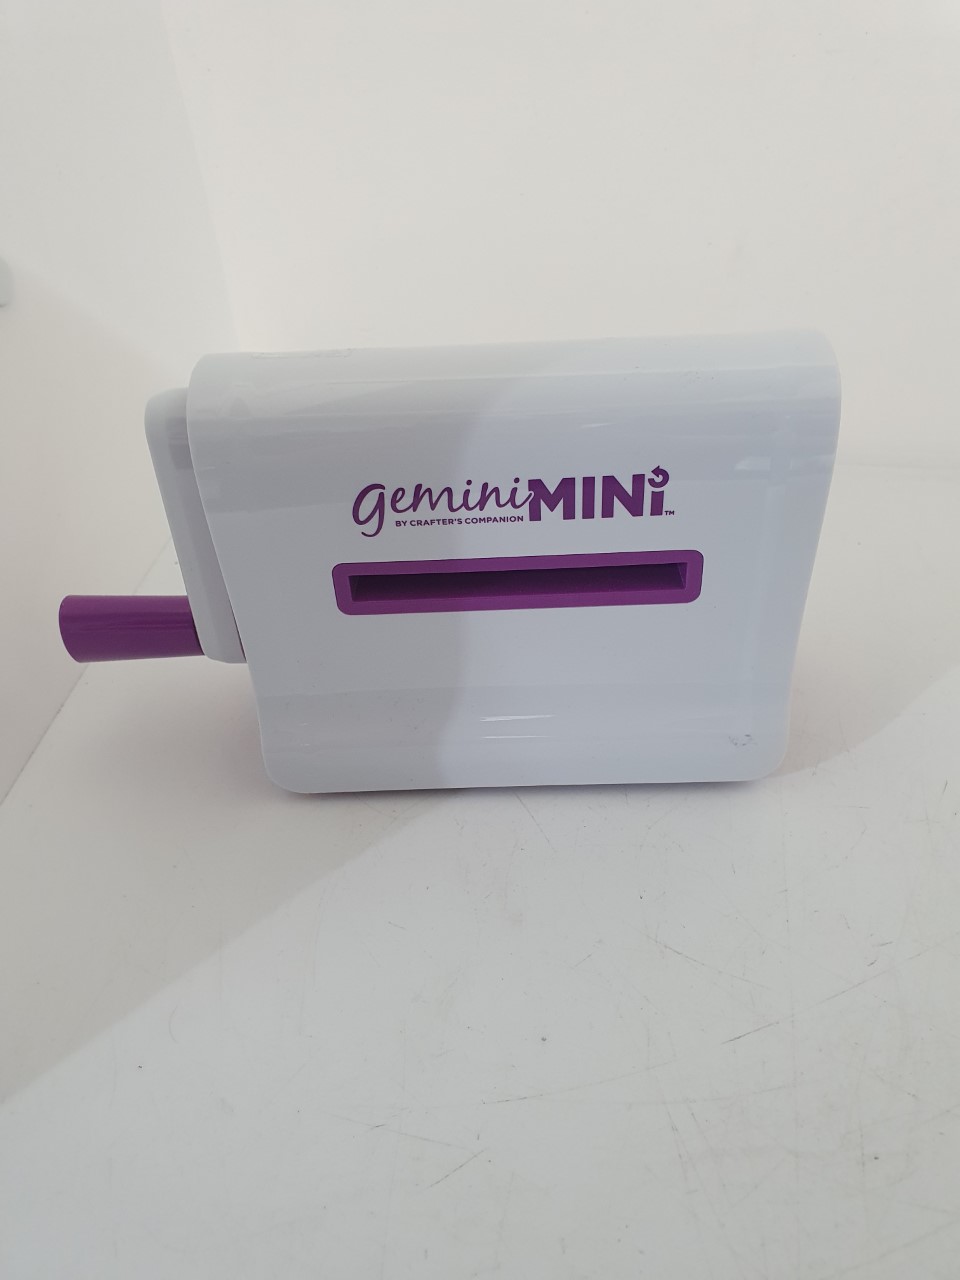 Gemini mini by crafters companion